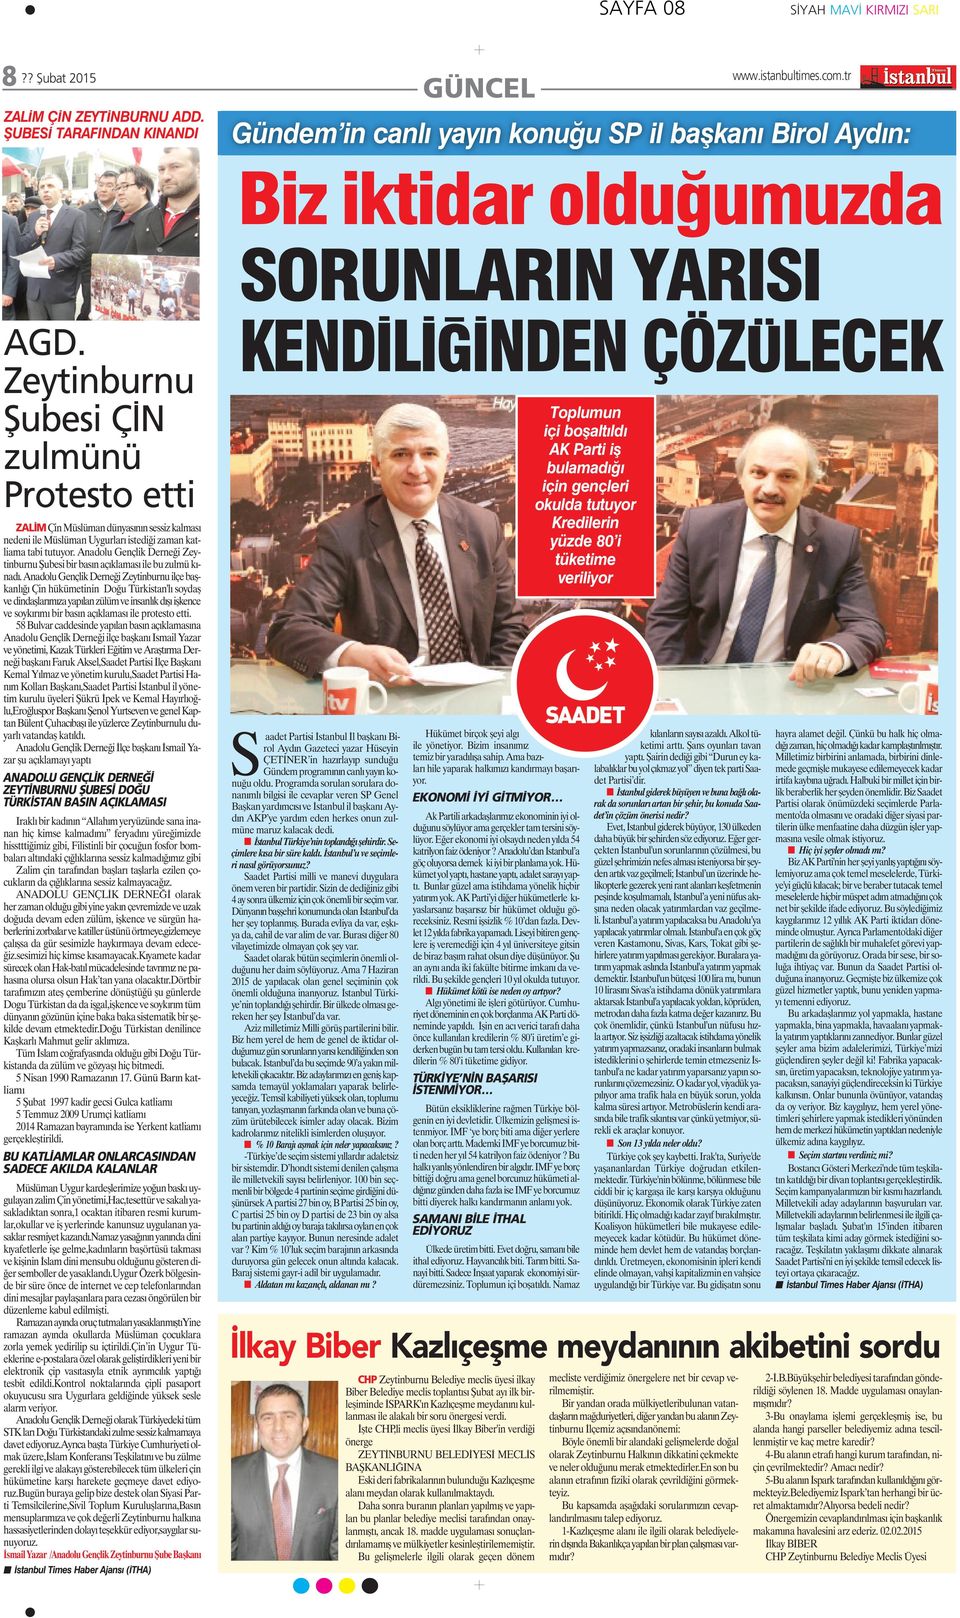 Anadolu Gençlik Derneği Zeytinburnu Şubesi bir basın açıklaması ile bu zulmü kınadı.